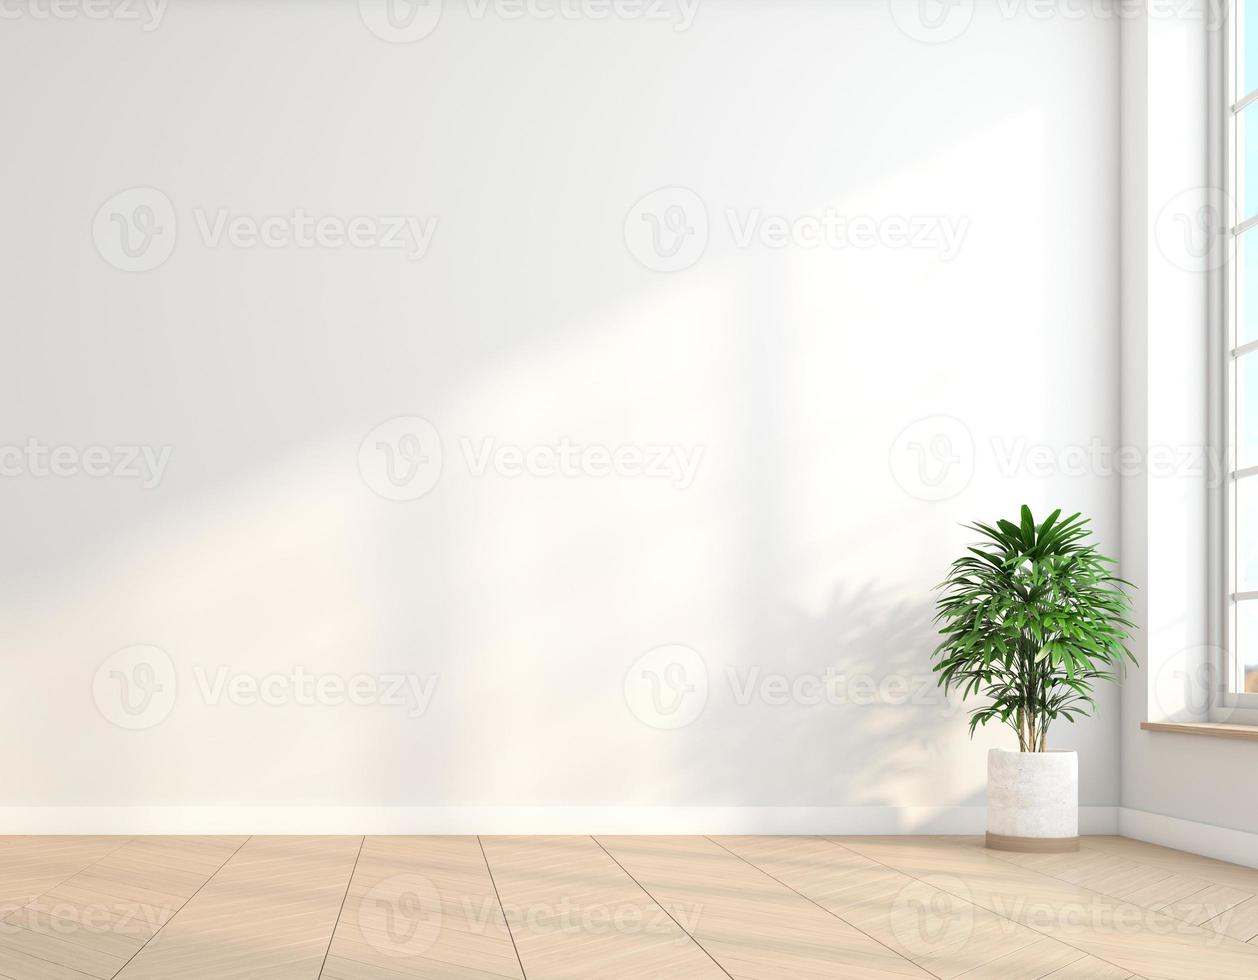 habitación vacía minimalista con paredes blancas y suelo de madera y plantas verdes interiores. representación 3d foto